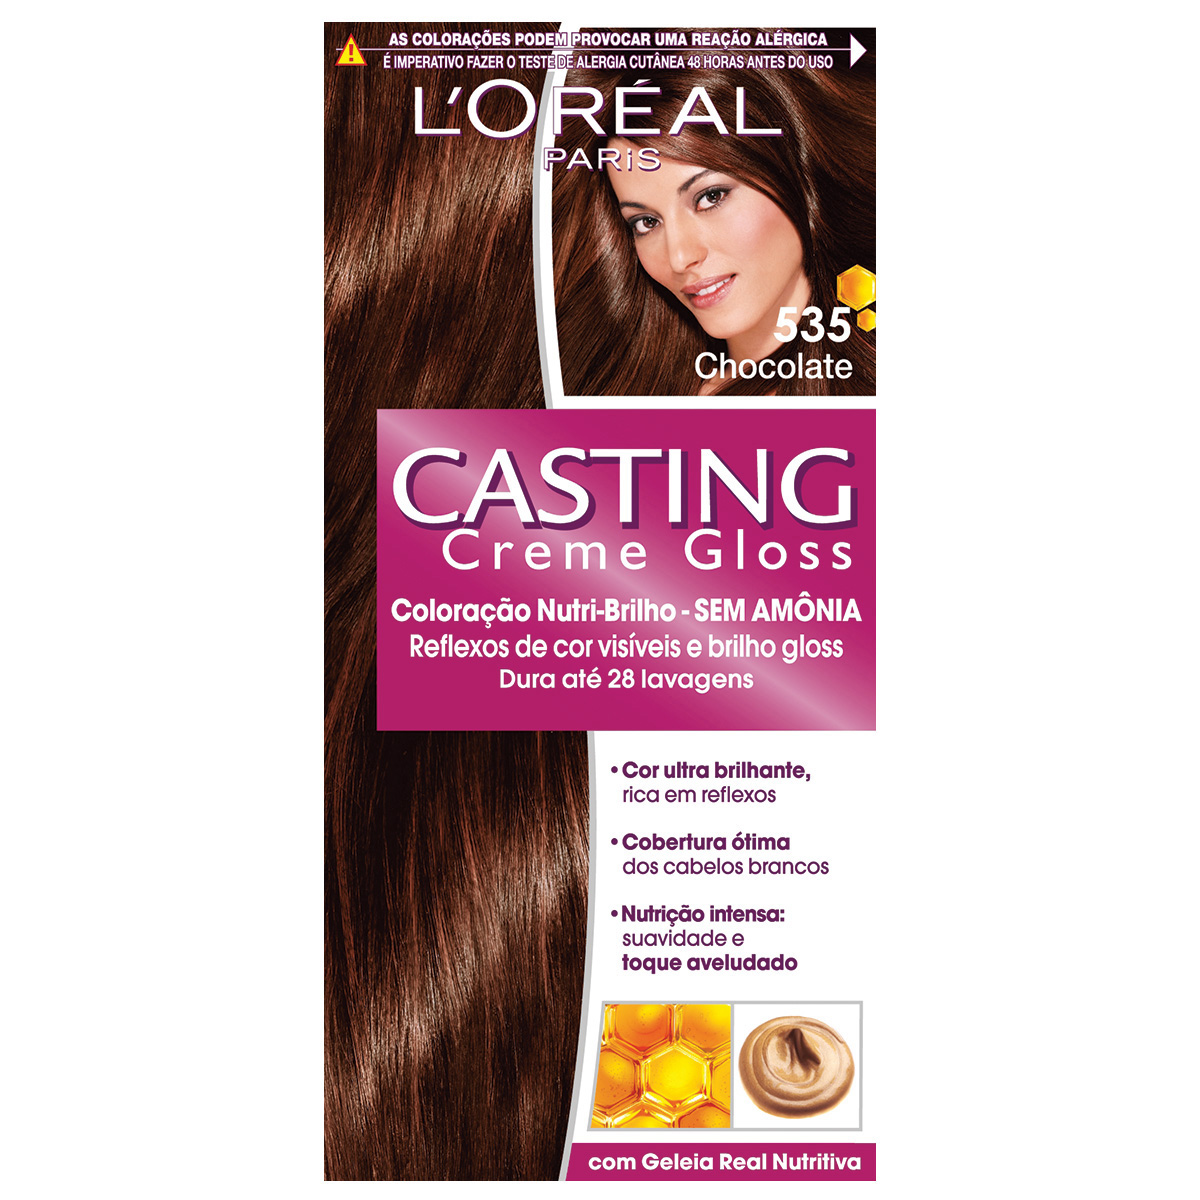 Coloração Permanente Casting Creme Gloss N° 535 Chocolate L'Oréal 1 Unidade